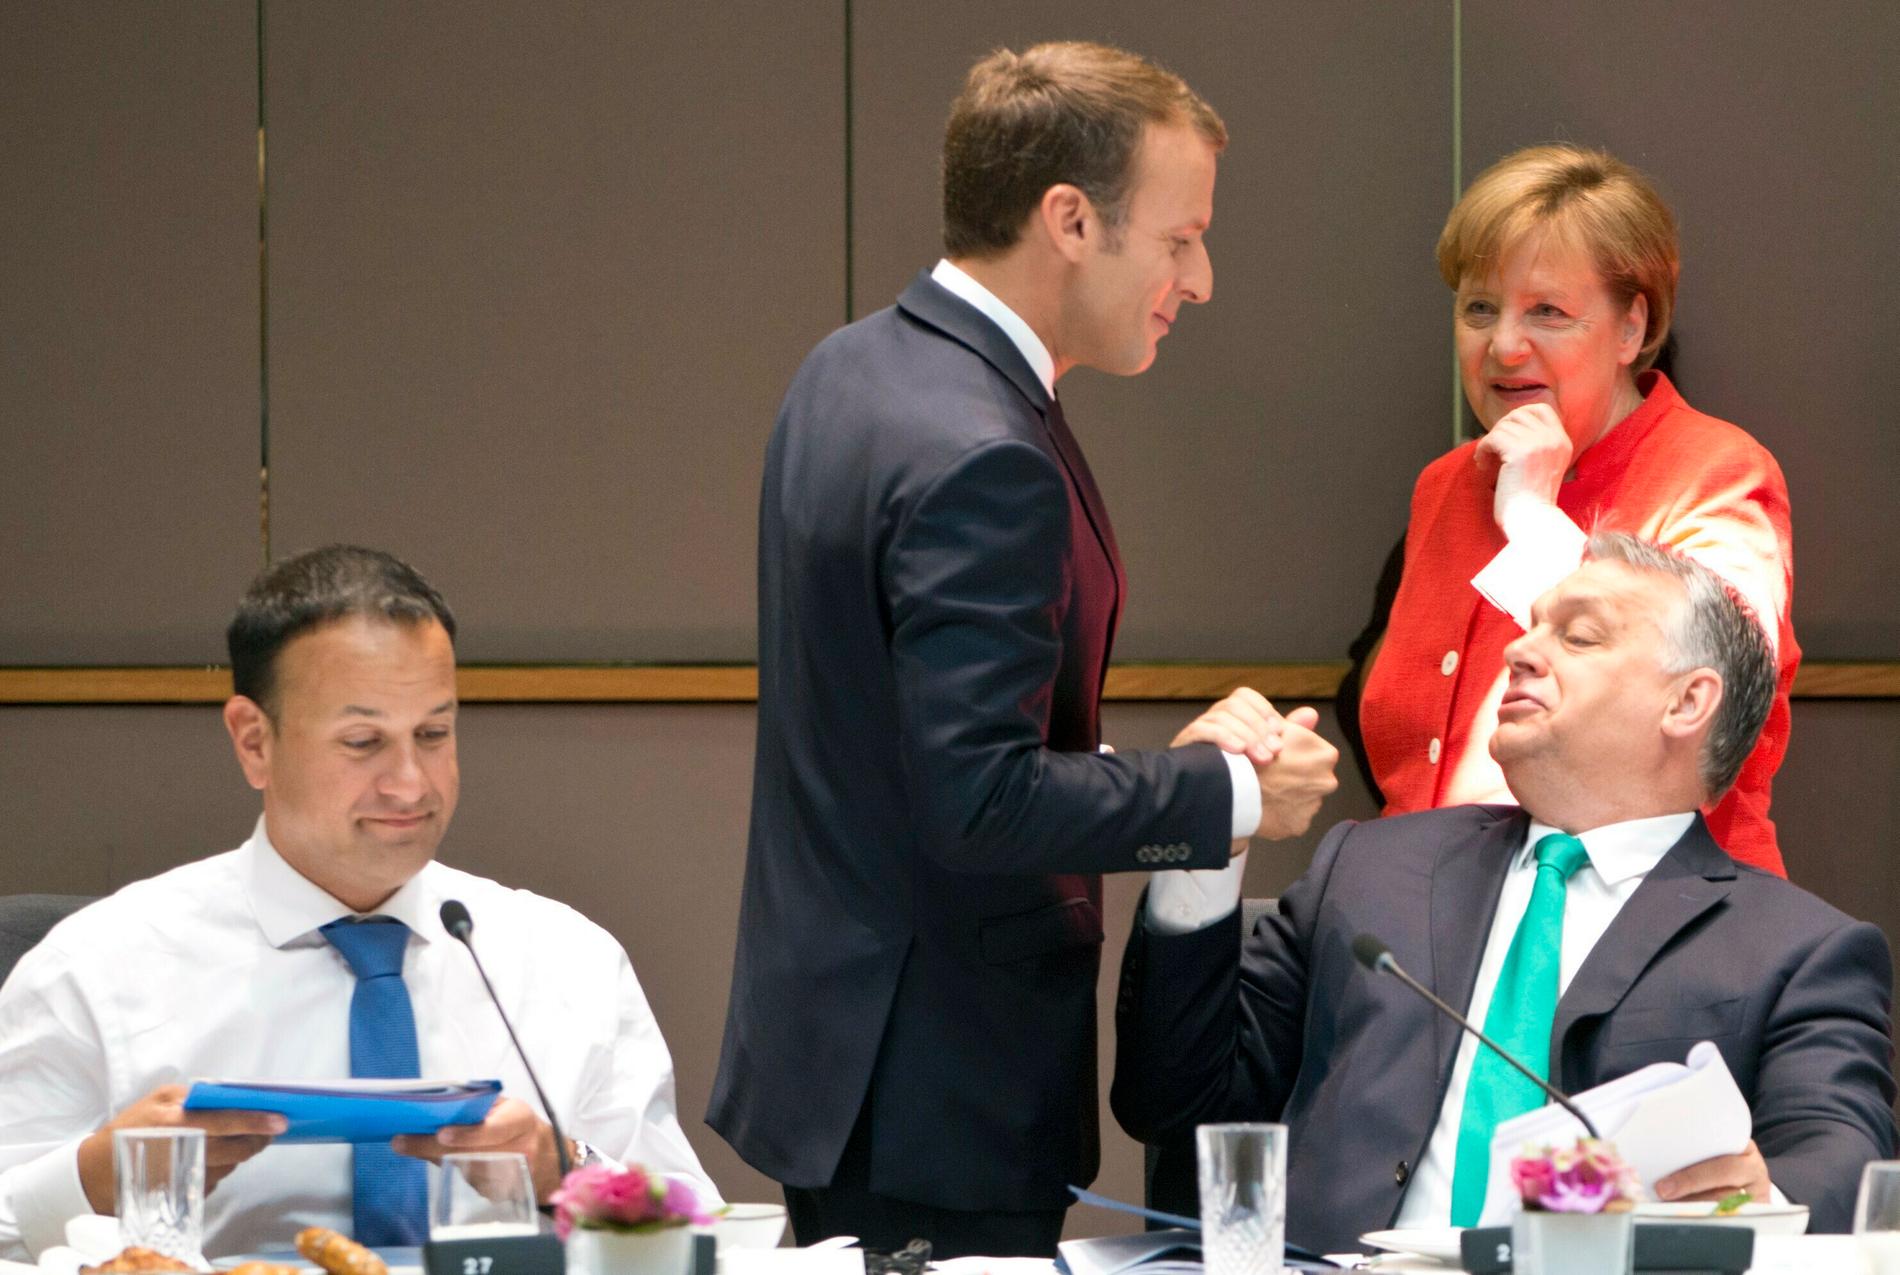 Frankrikes president Emmanuel Macron, Tysklands förbundskansler Angela Merkel och Ungerns premiärminister Viktor Orbán under ett EU-toppmöte i Bryssel. På bilden syns även Irlands premiärminister Leo Varadkar. Arkivbild.